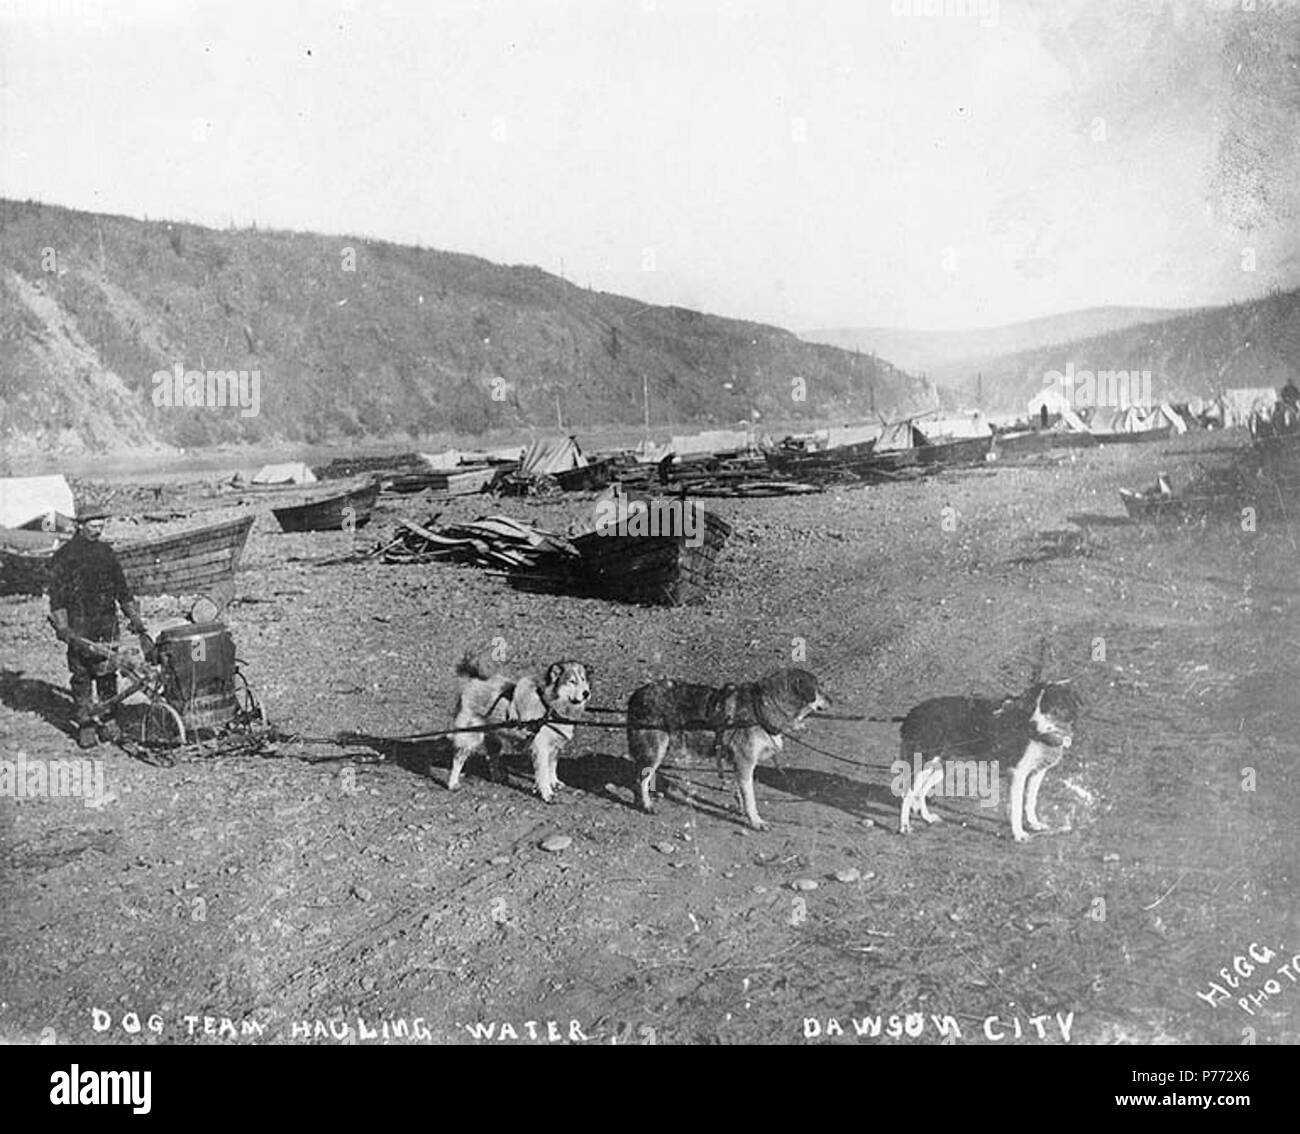 . Englisch: Hund Team schleppen Wasser, Dawson City, Yukon Territory, Ca. 1898. Englisch: Legende auf Bild: 'Dog Team schleppen Wasser Dawson City'. Klondike Gold Rush. Themen (LCTGM): Hund Mannschaften - Yukon - Dawson; Wasser; Boote---- Yukon Dawson; Karren & Wagen ------ Yukon Dawson. ca. 1898 3 Hund Team schleppen Wasser, Dawson City, Yukon Territory, ca 1898 HEGG (31) Stockfoto